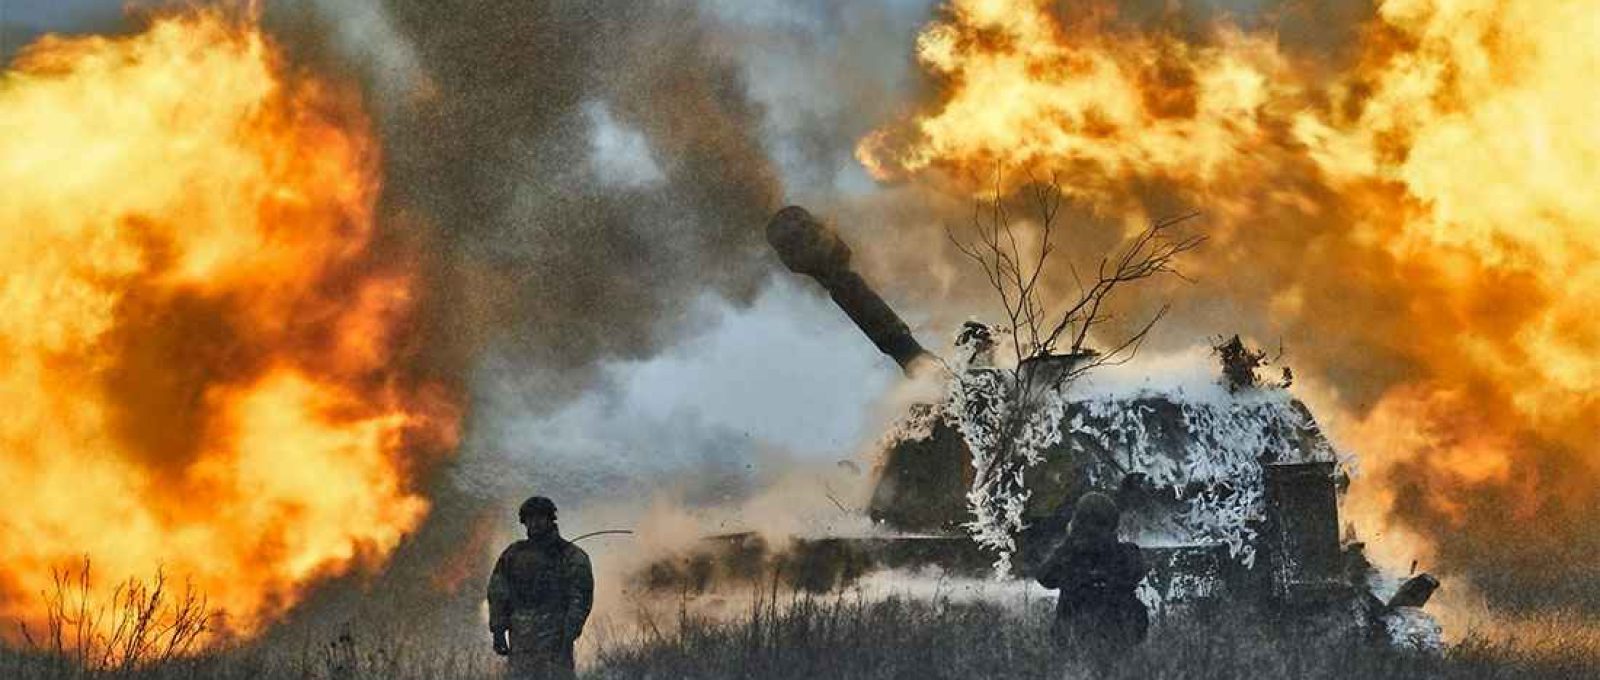 Linha de frente na região de Donetsk, Ucrânia, no sábado 18 de fevereiro (Libkos/Associated Press).